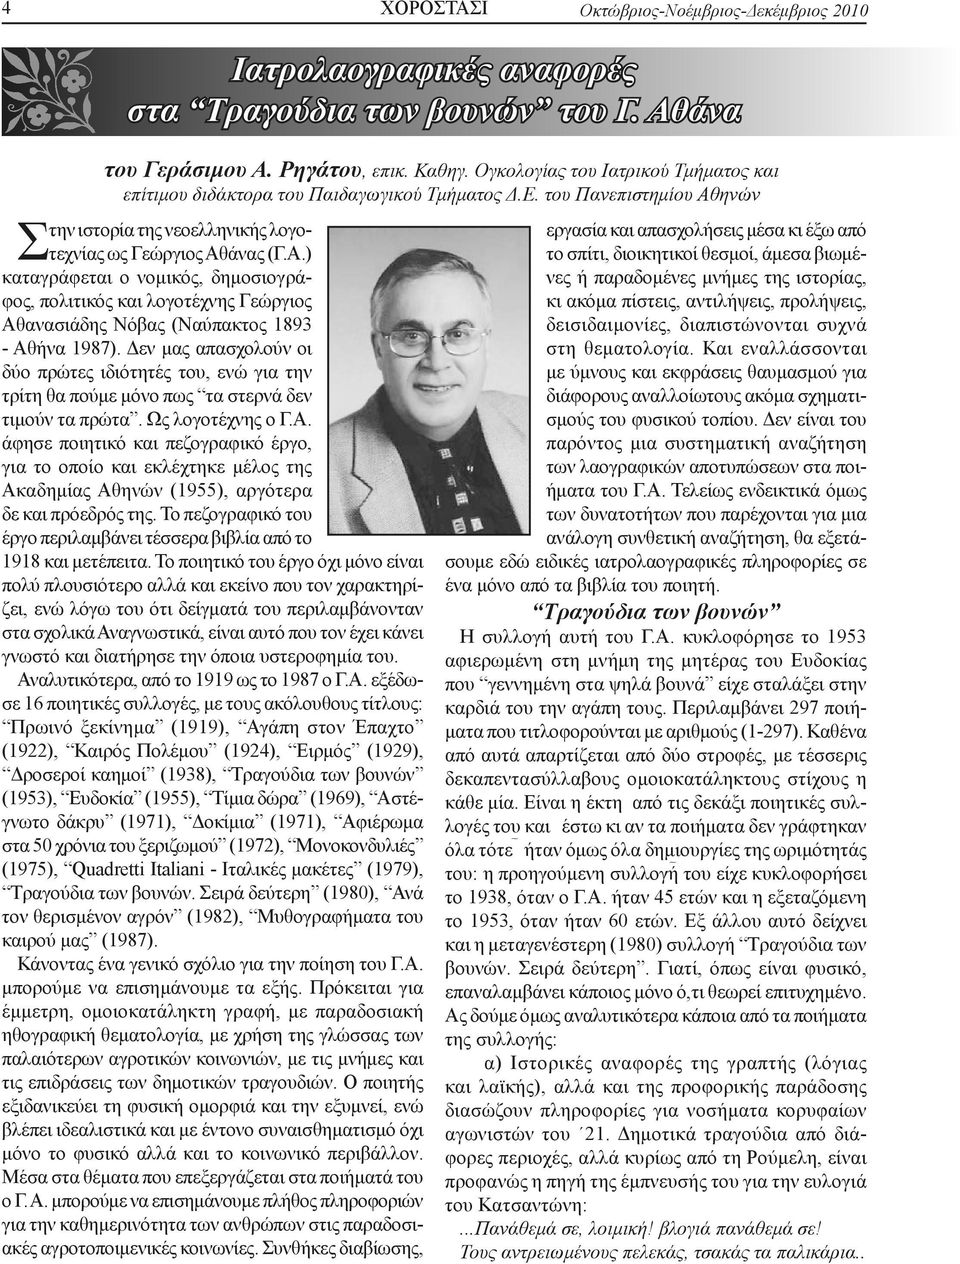 ηνών Στην ιστορία της νεοελληνικής λογοτεχνίας ως Γεώργιος Αθάνας (Γ.Α.) καταγράφεται ο νομικός, δημοσιογράφος, πολιτικός και λογοτέχνης Γεώργιος Αθανασιάδης Νόβας (Ναύπακτος 1893 - Αθήνα 1987).